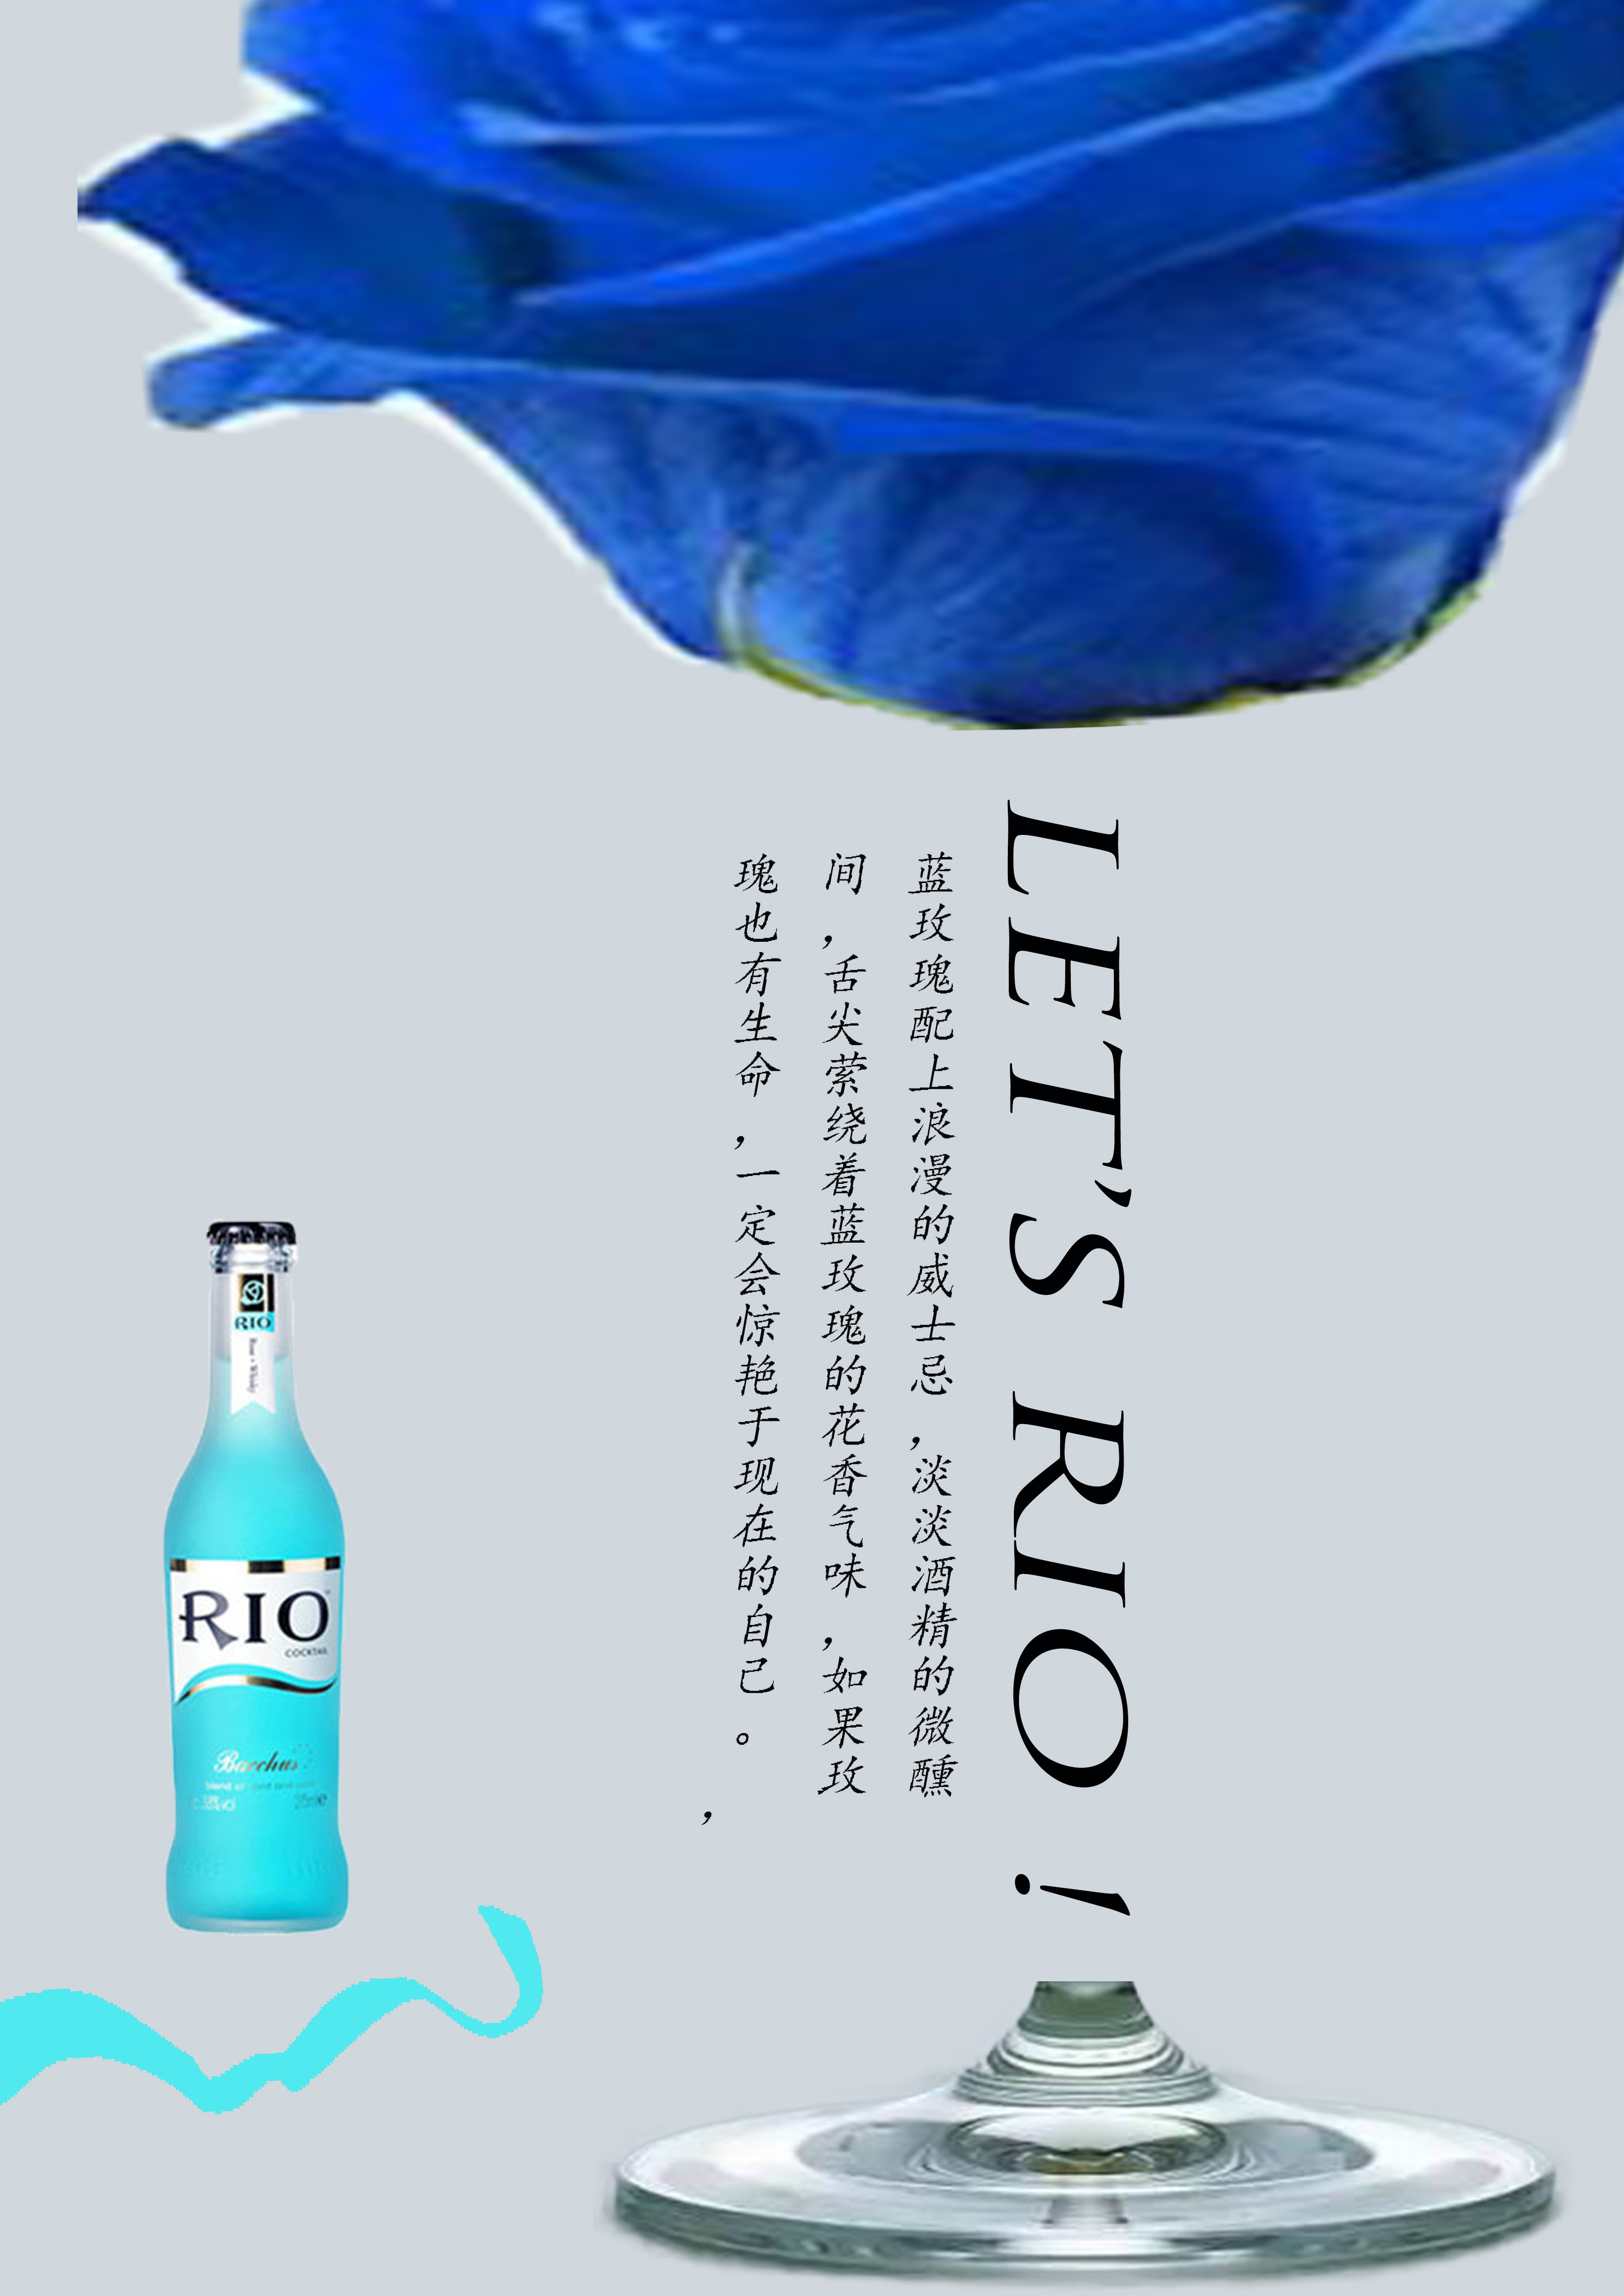 将rio鸡尾酒中的花果设计成酒杯的形象,暗示了rio鸡尾酒所包含的成分